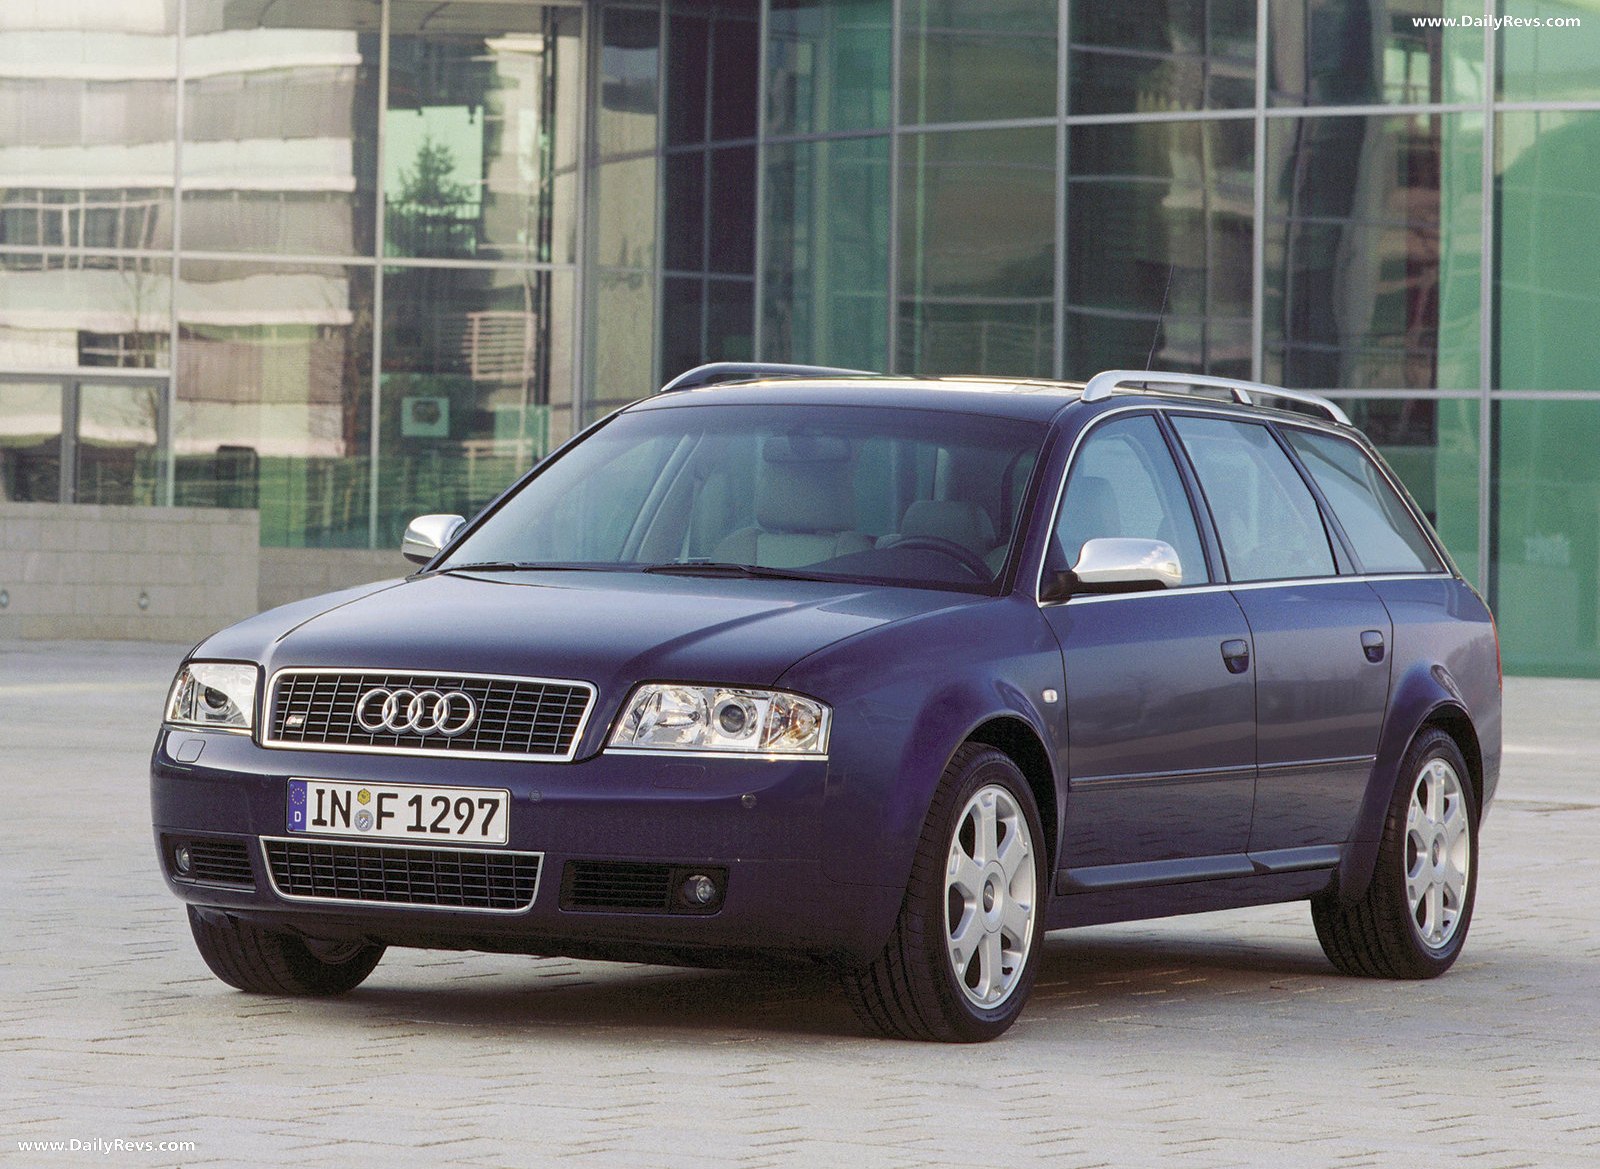 Ауди универсал 2002. Ауди s6 Авант. Audi a6 c5 универсал. Ауди а6 Авант 2001. Audi a6 2002 универсал.